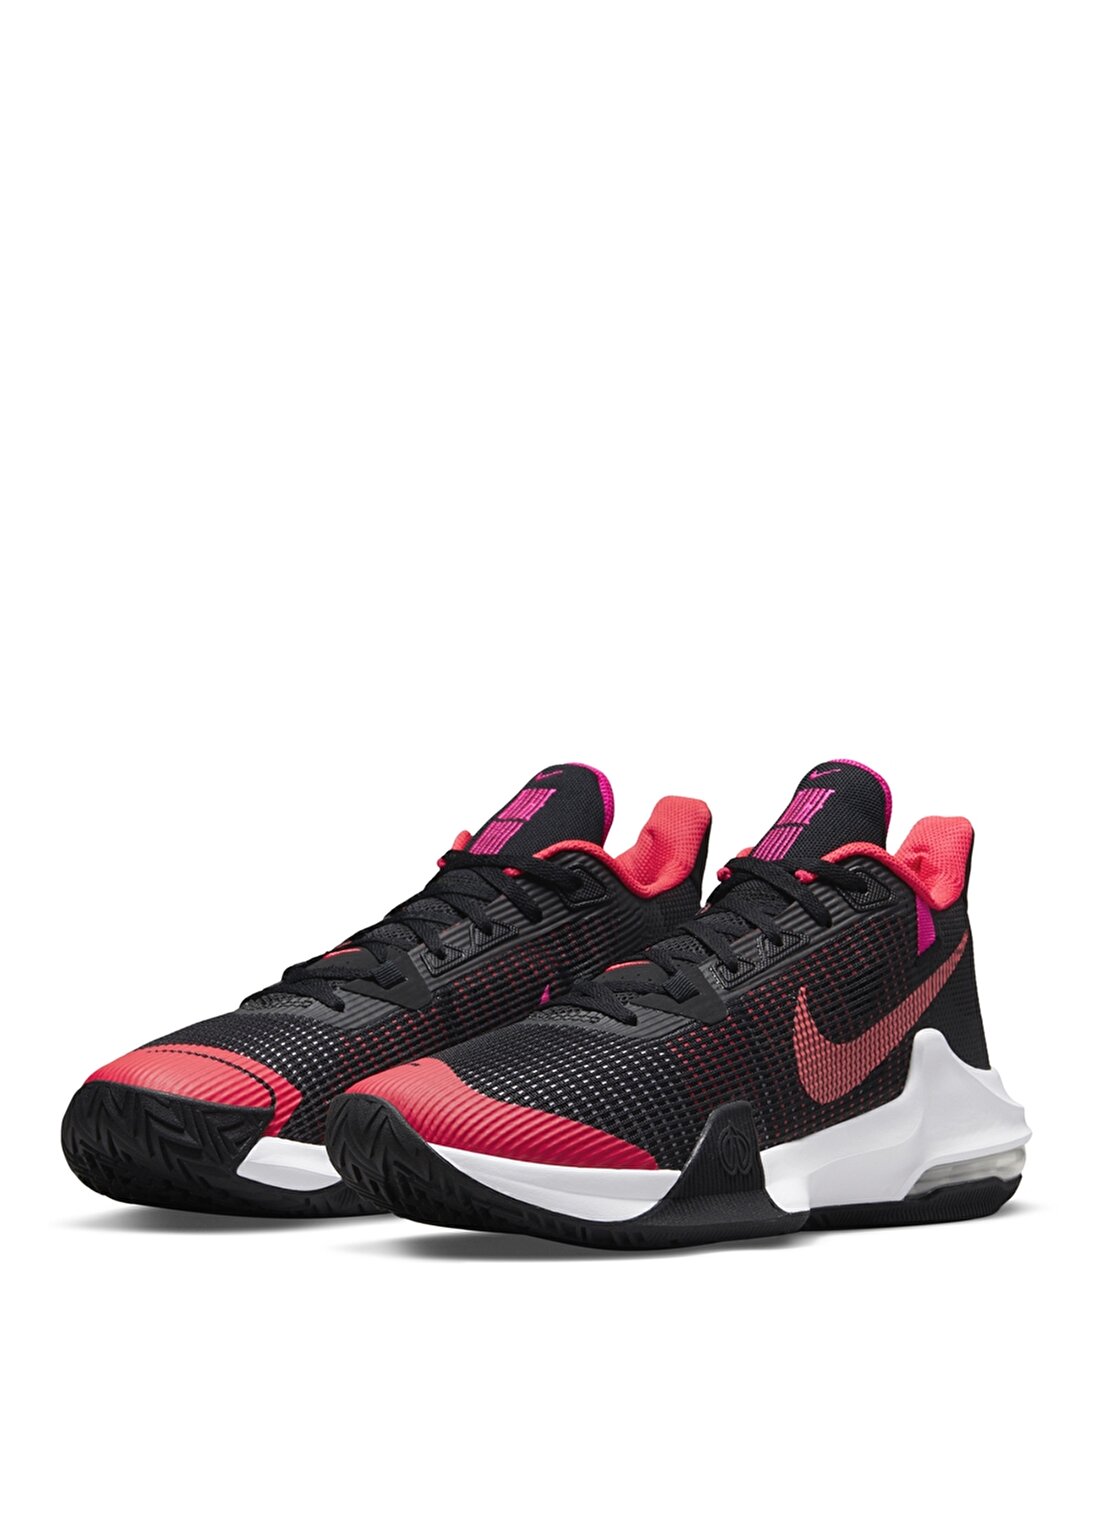 Nike Siyah - Kırmızı Erkek Basketbol Ayakkabısı - M1610075-900